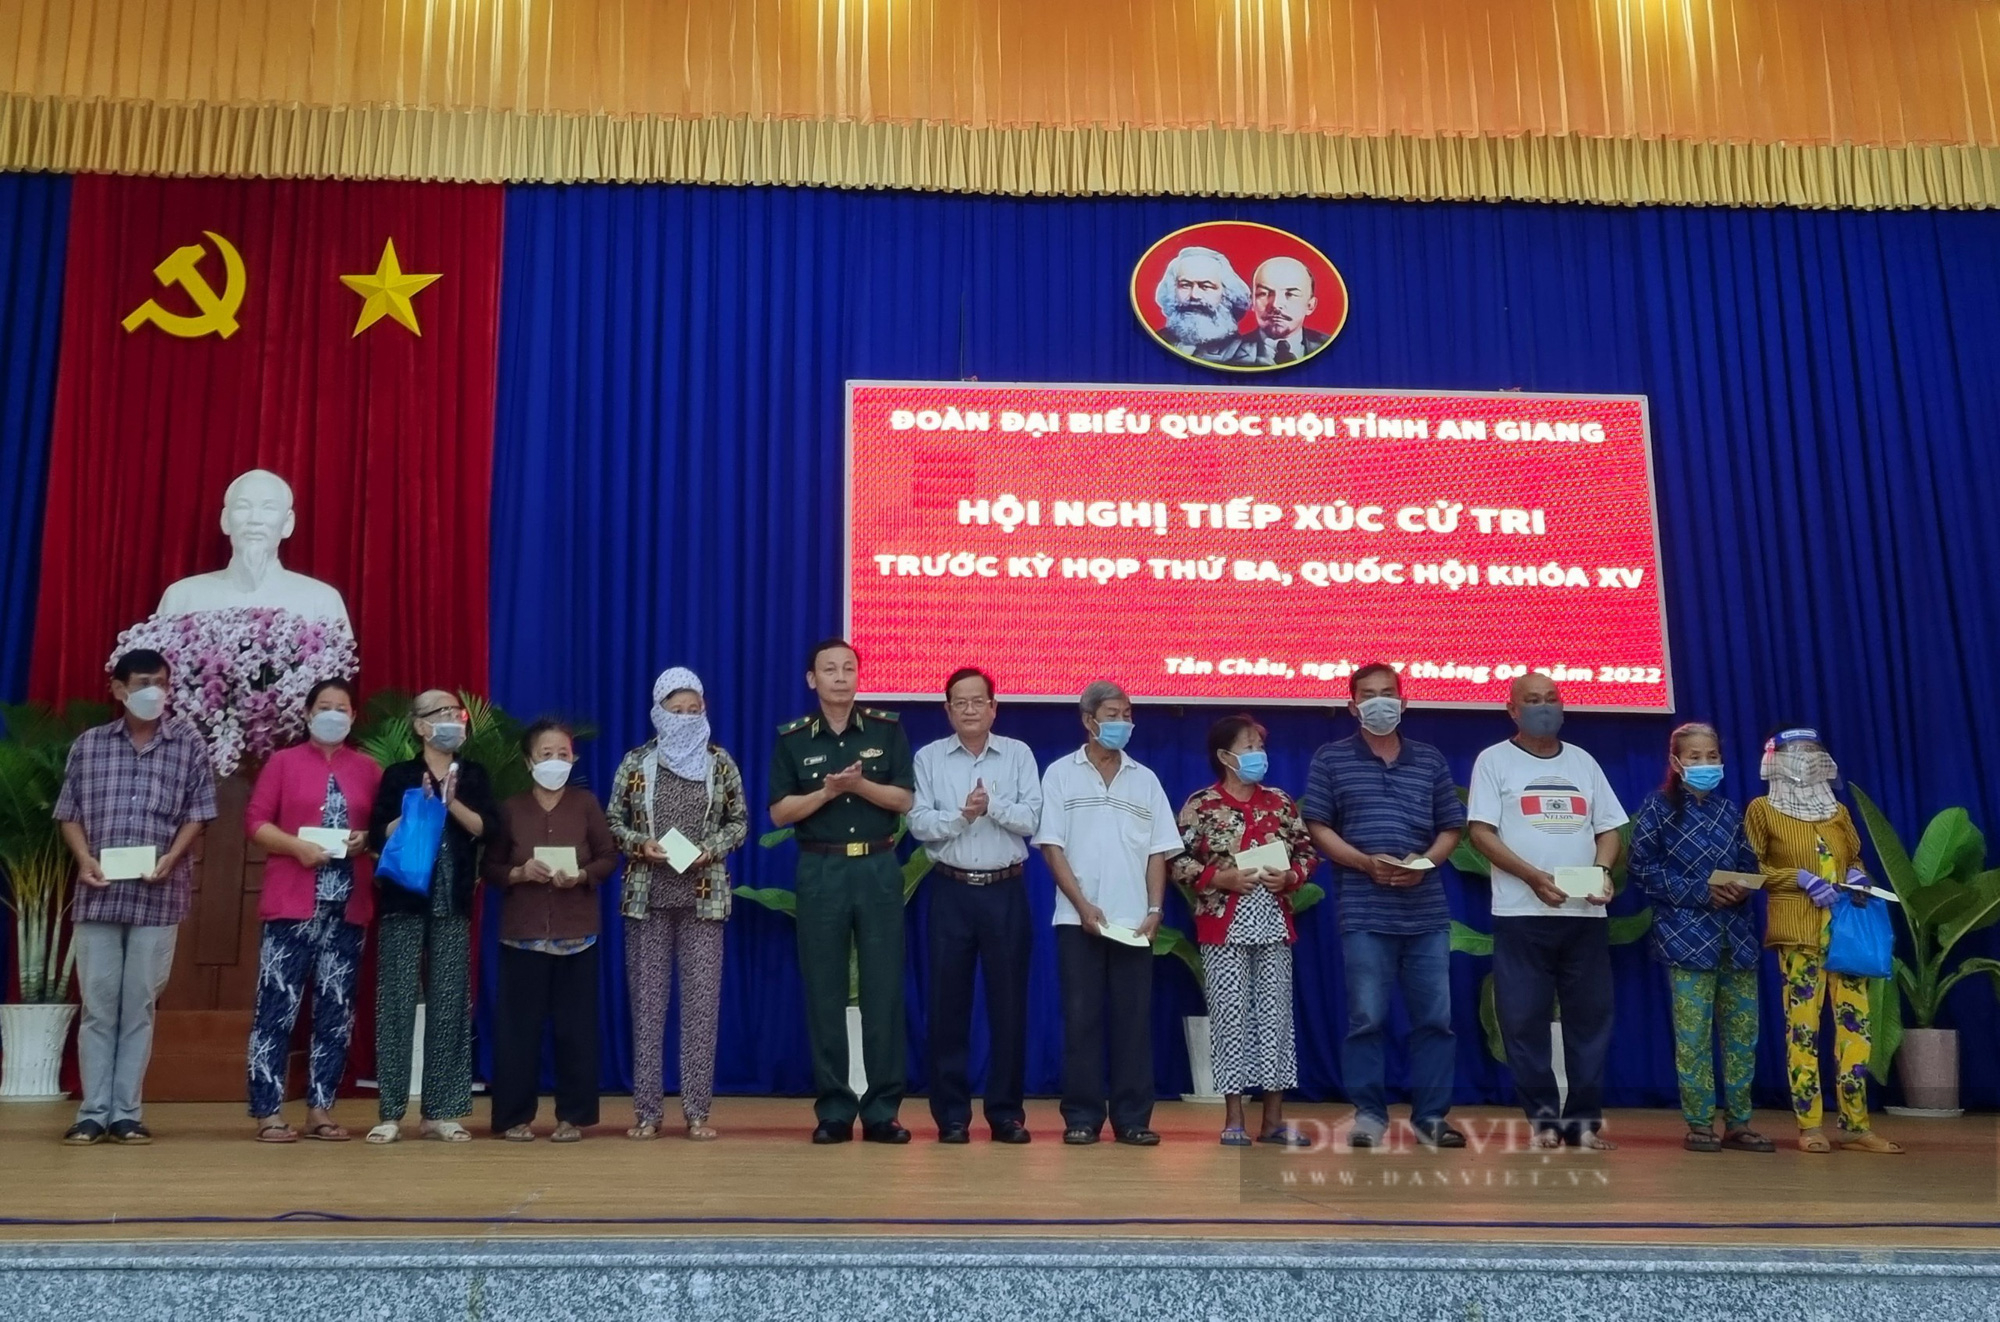 Đoàn đại biểu Quốc hội tỉnh An Giang: Sẽ kiến nghị ý kiến của cử tri lên Thủ tướng Chính phủ - Ảnh 10.